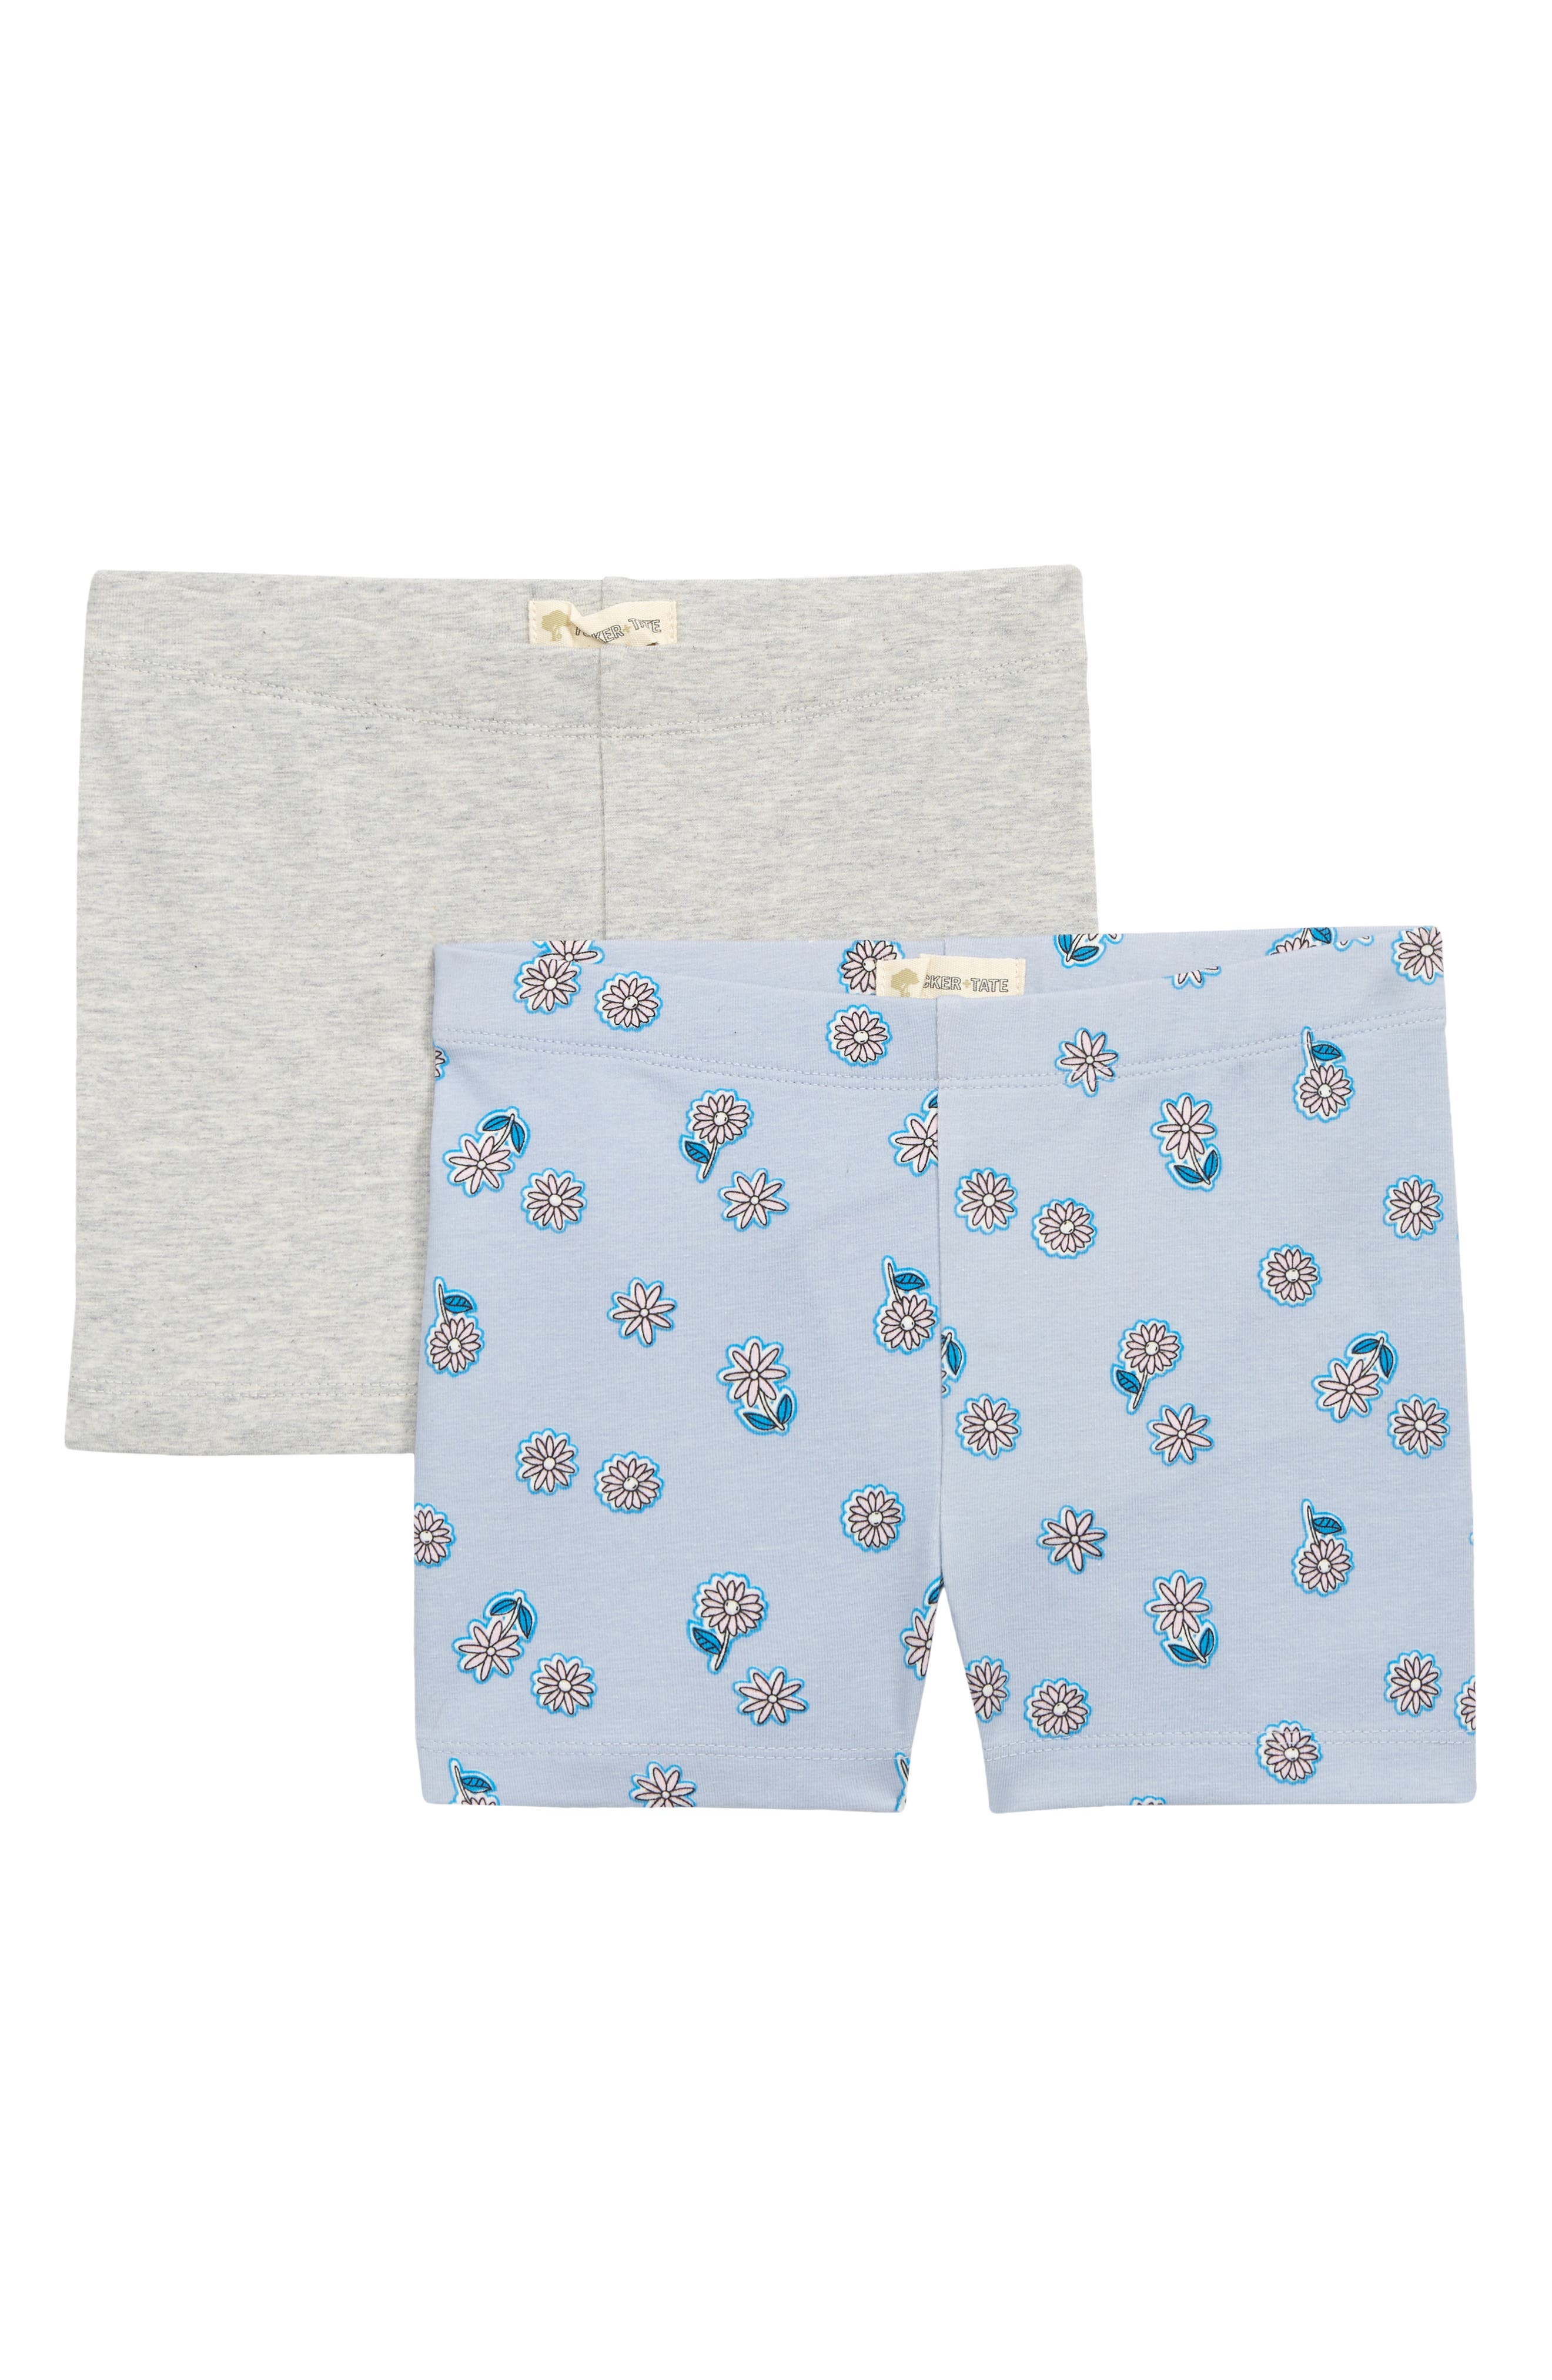 Tucker + Tate Kids' 2-Pack Bike Shorts in Blue Zen Flower Patch Pack